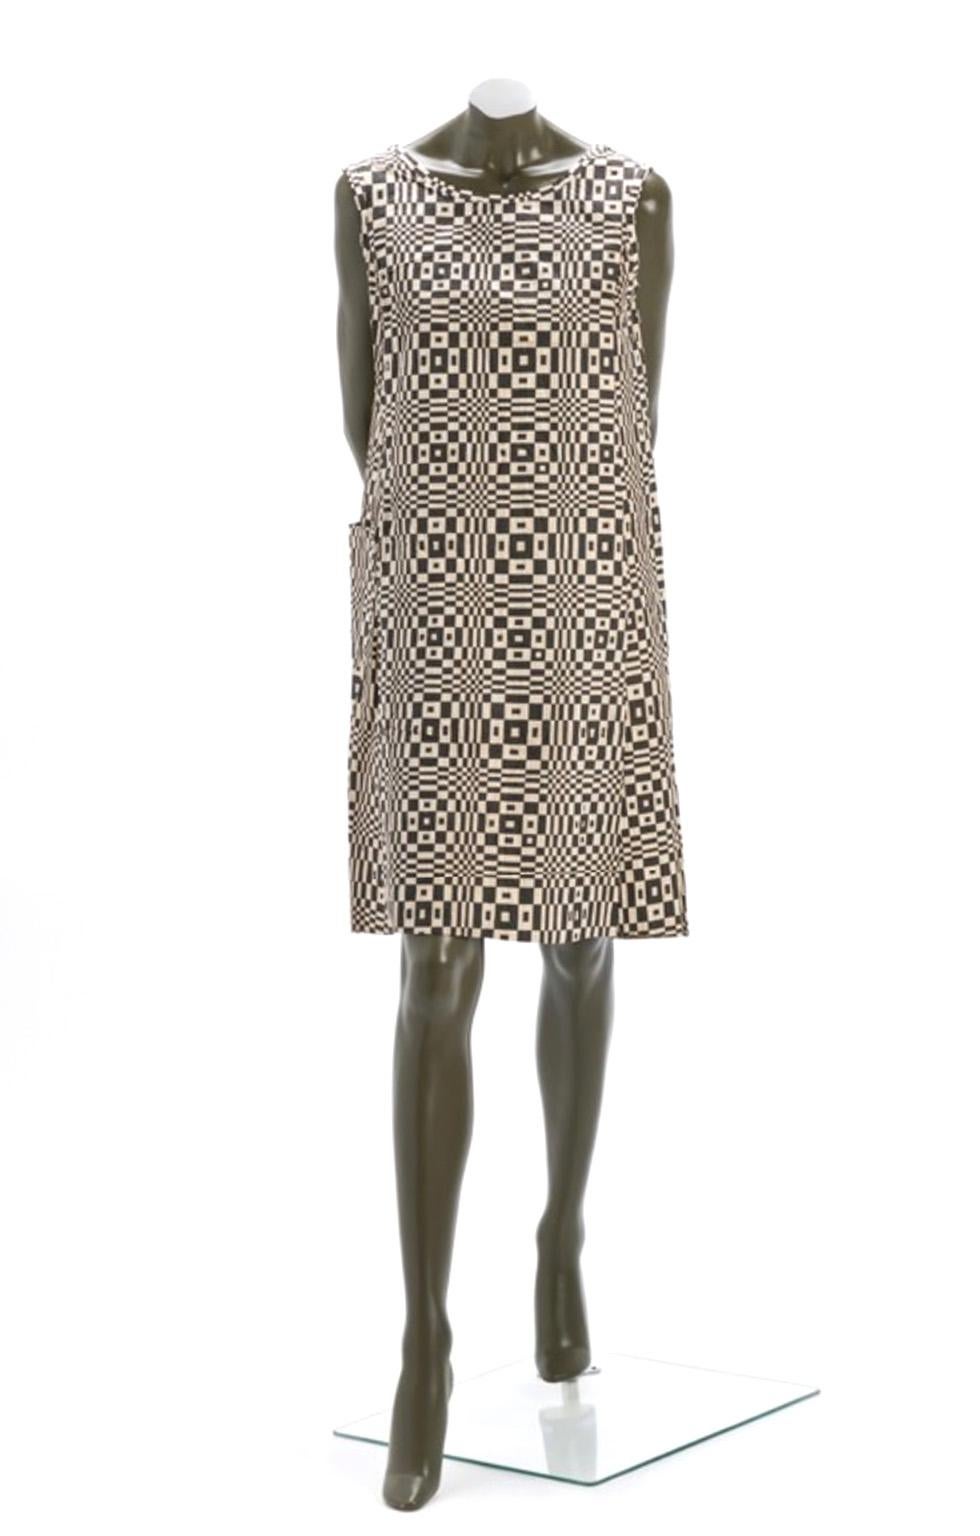 Dieses Kleid, mit dem das alles begann, war ein Werbetrickspiel der Scott Paper Company, das 1966 zur Förderung der wegwerfbaren Tafelgeschirrkollektion des Unternehmens verwendet wurde. Das Kleid war ein perfektes Mittel für die jugendlichen Drucke